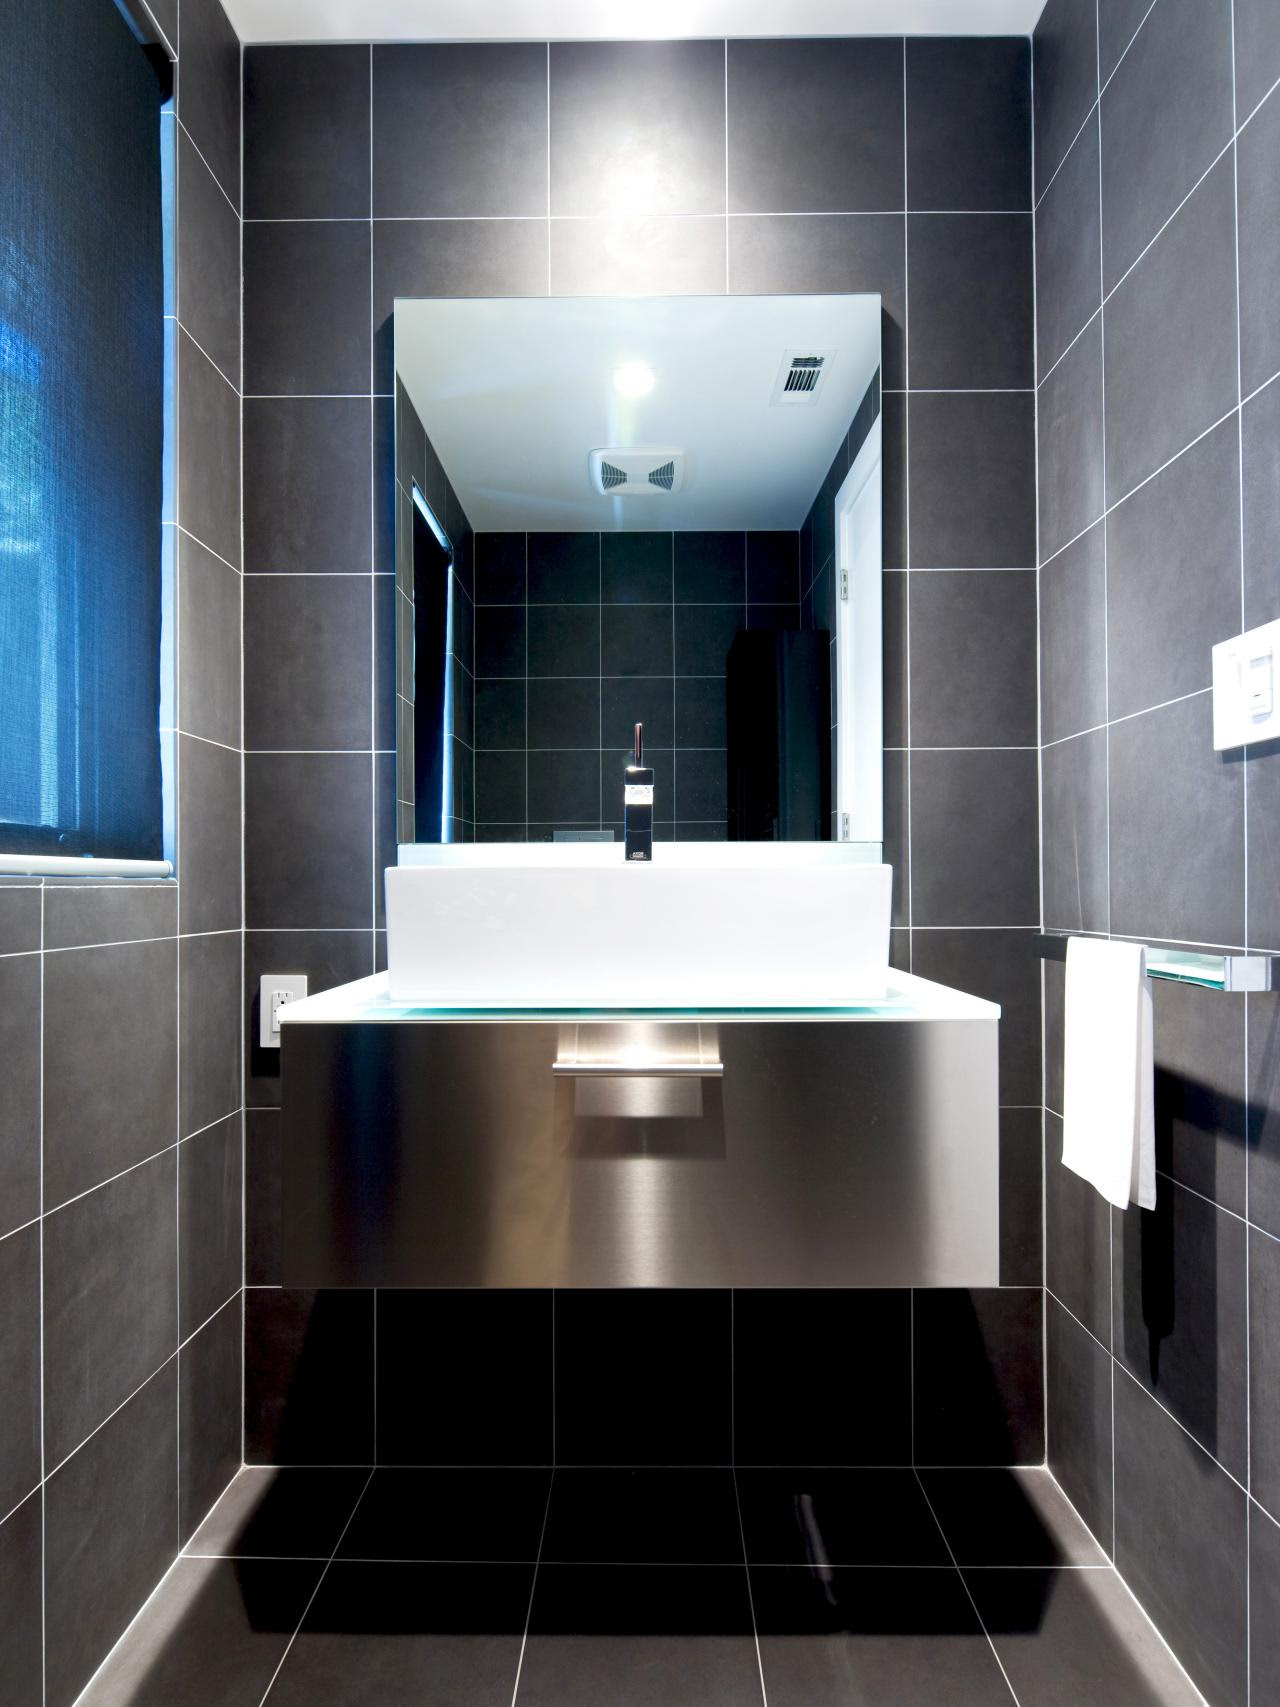 15 Simply Chic Bathroom Tile Design Ideas | Bathroom Ideas ...